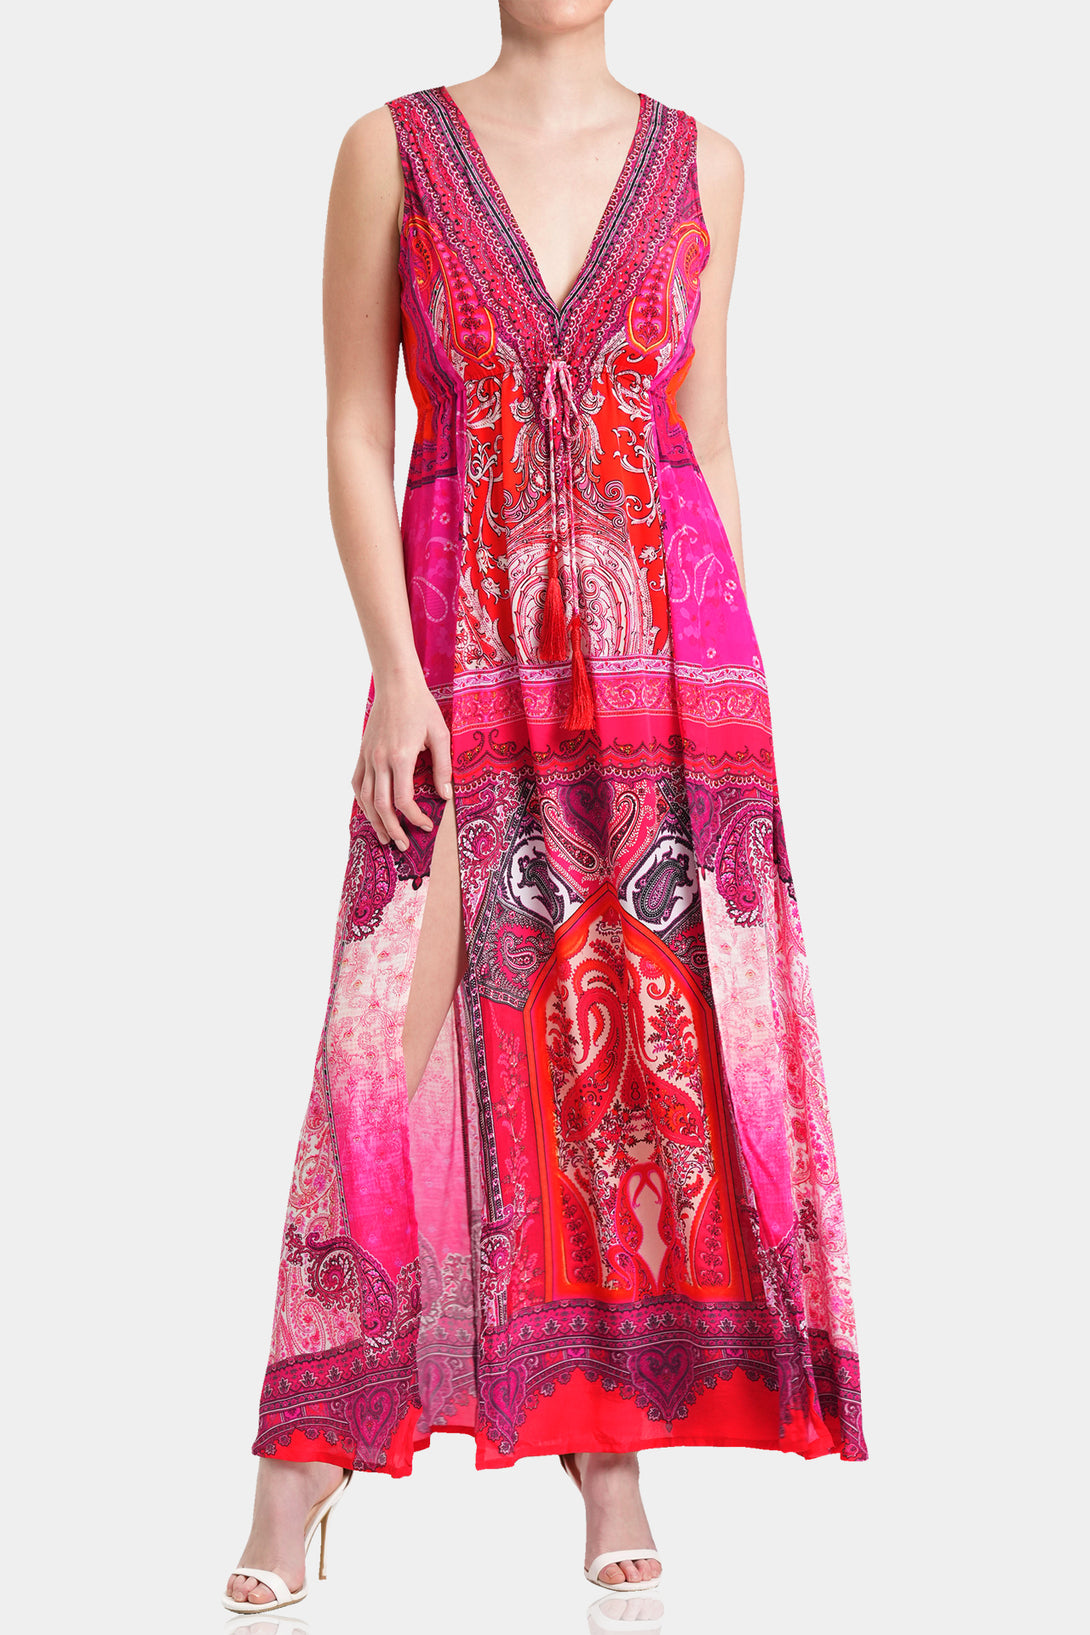  maxi dress hot pink, Shahida Parides, long dresses for women, flowy maxi dress, Shahida Parides,